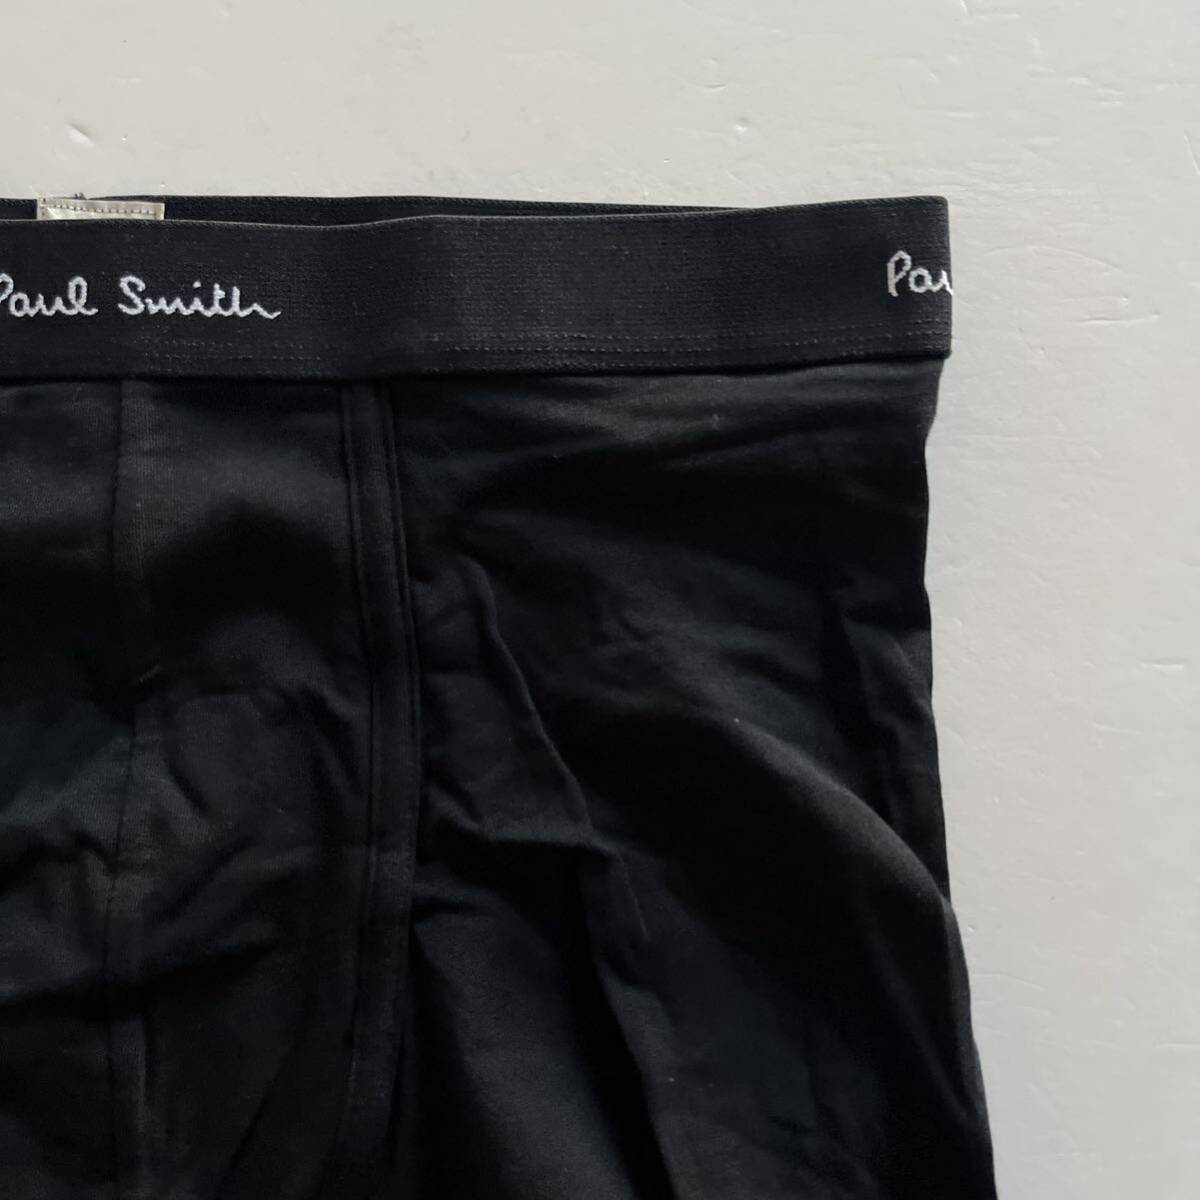 Paul Smith ポールスミス メンズボクサー ML-L(M) ブラック 黒 ボクサーパンツ メンズインナーウエア 男性ボクサー 男性パンツ の画像2